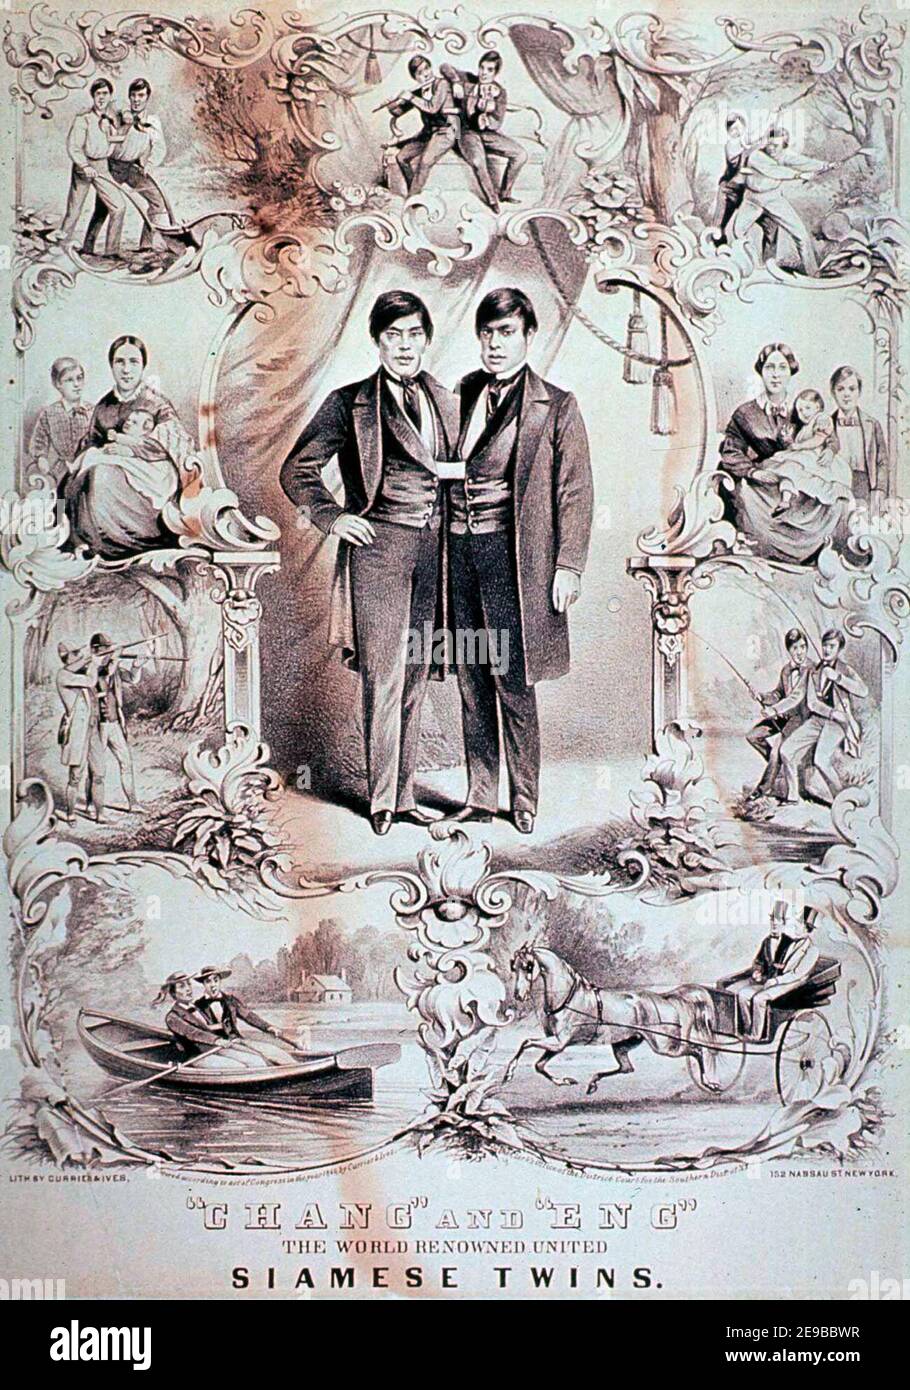 Lithographie de Currier et Ives en date de 1860, qui dépeint « les Twins siamois Unis de renommée mondiale » Chang et Eng Bunker. La frontière montre que Chang et Eng s'occupent de diverses activités, comme la chasse, la pêche et l'agriculture. Leurs femmes et leurs enfants sont montrés à chacun de leurs côtés. Banque D'Images